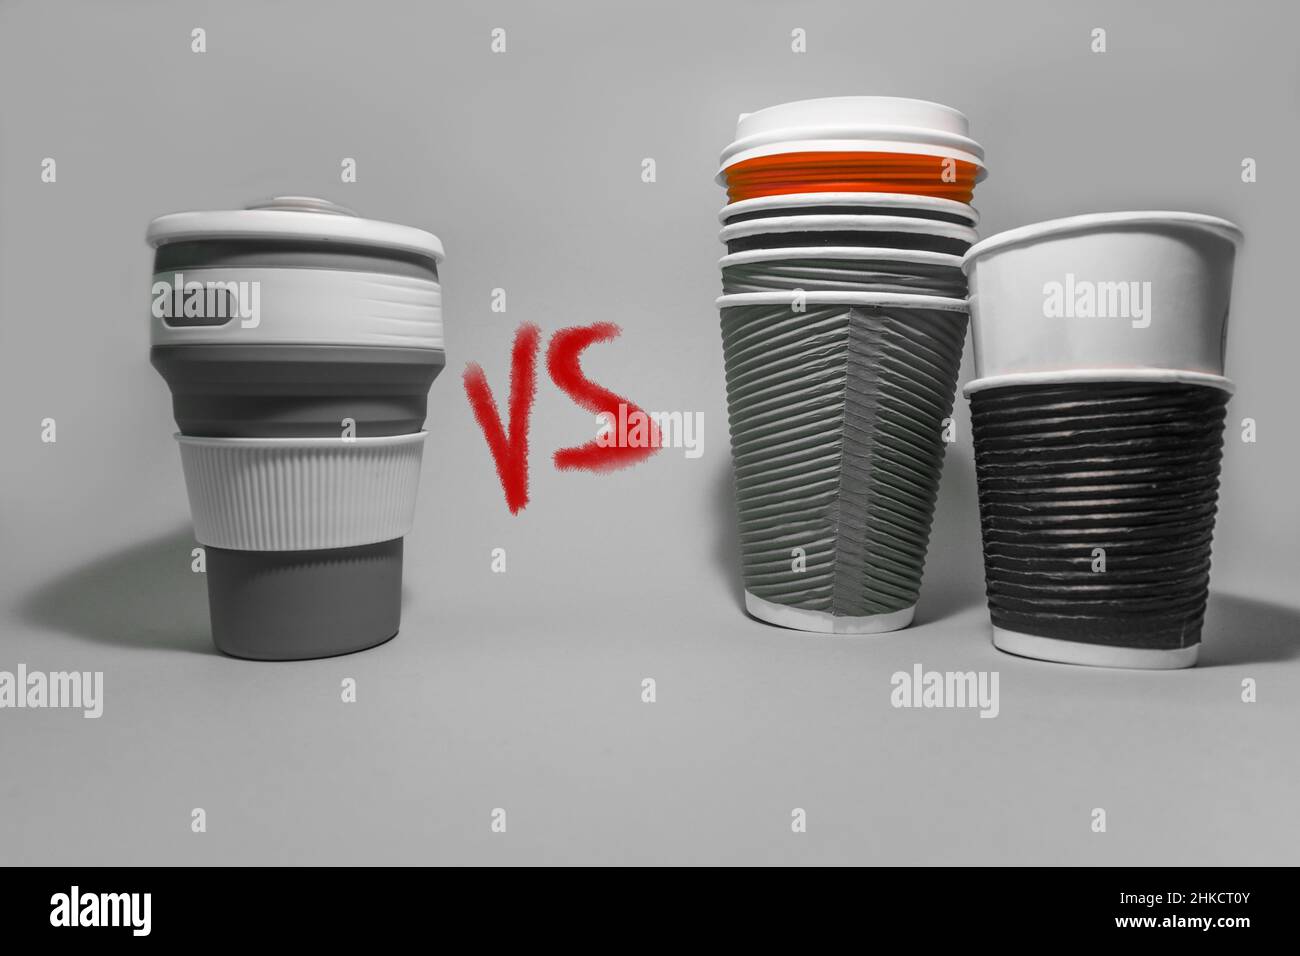 Taza de café reutilizable frente a tazas de café desechables de papel. Consumo consciente. Cuidar el medio ambiente. Foto de stock